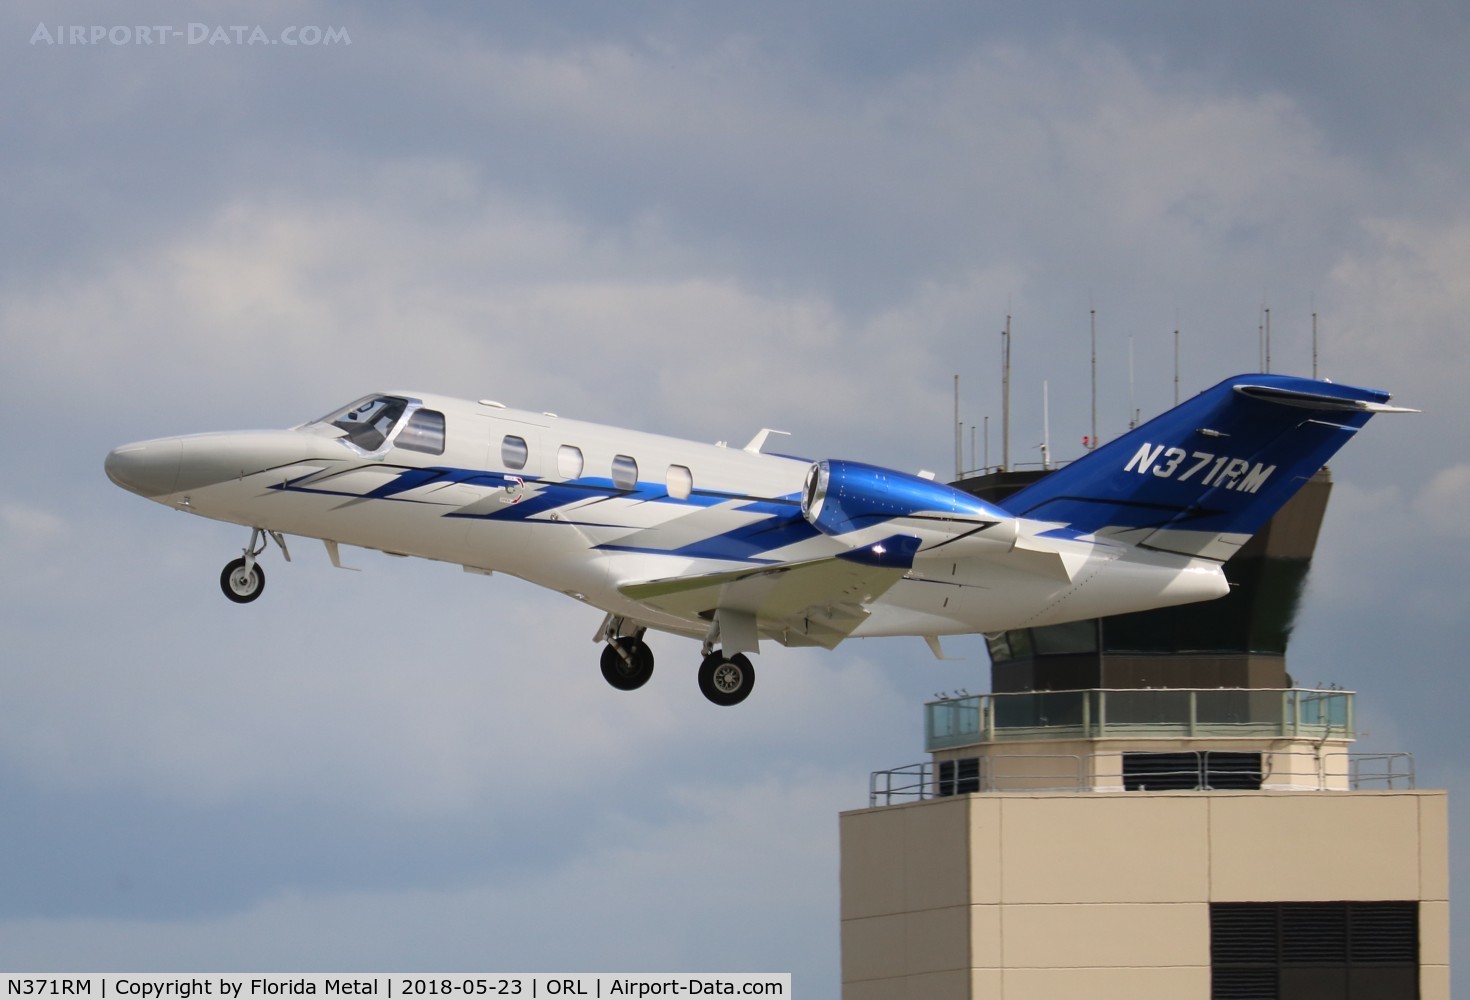 N371RM, 2015 Cessna 525 Citation M2 C/N 525-0900, Citation M2